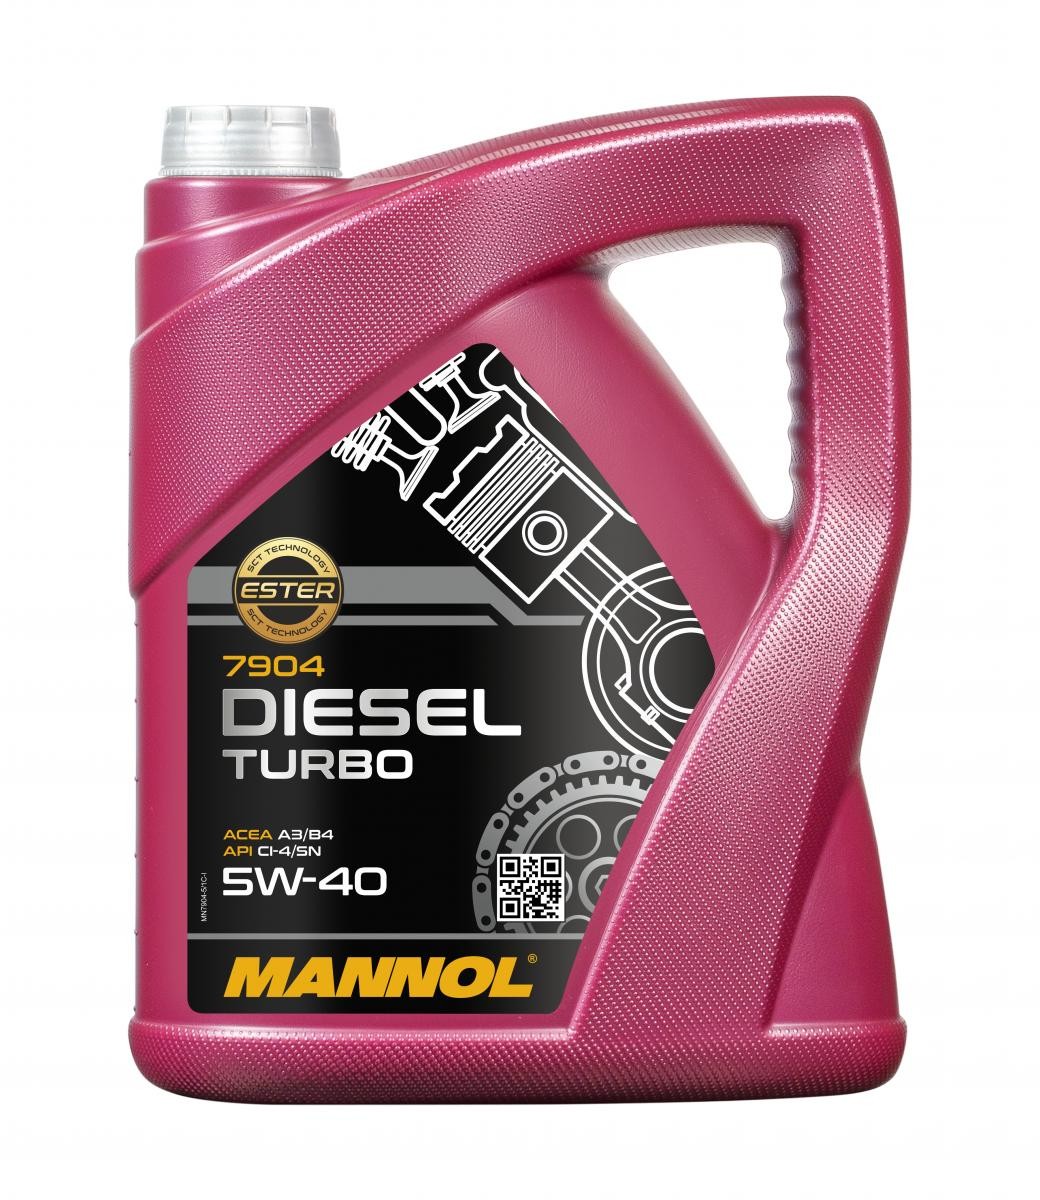 Car oil 5W-40 longlife diesel - MN7904-5 MANNOL DIESEL TURBO